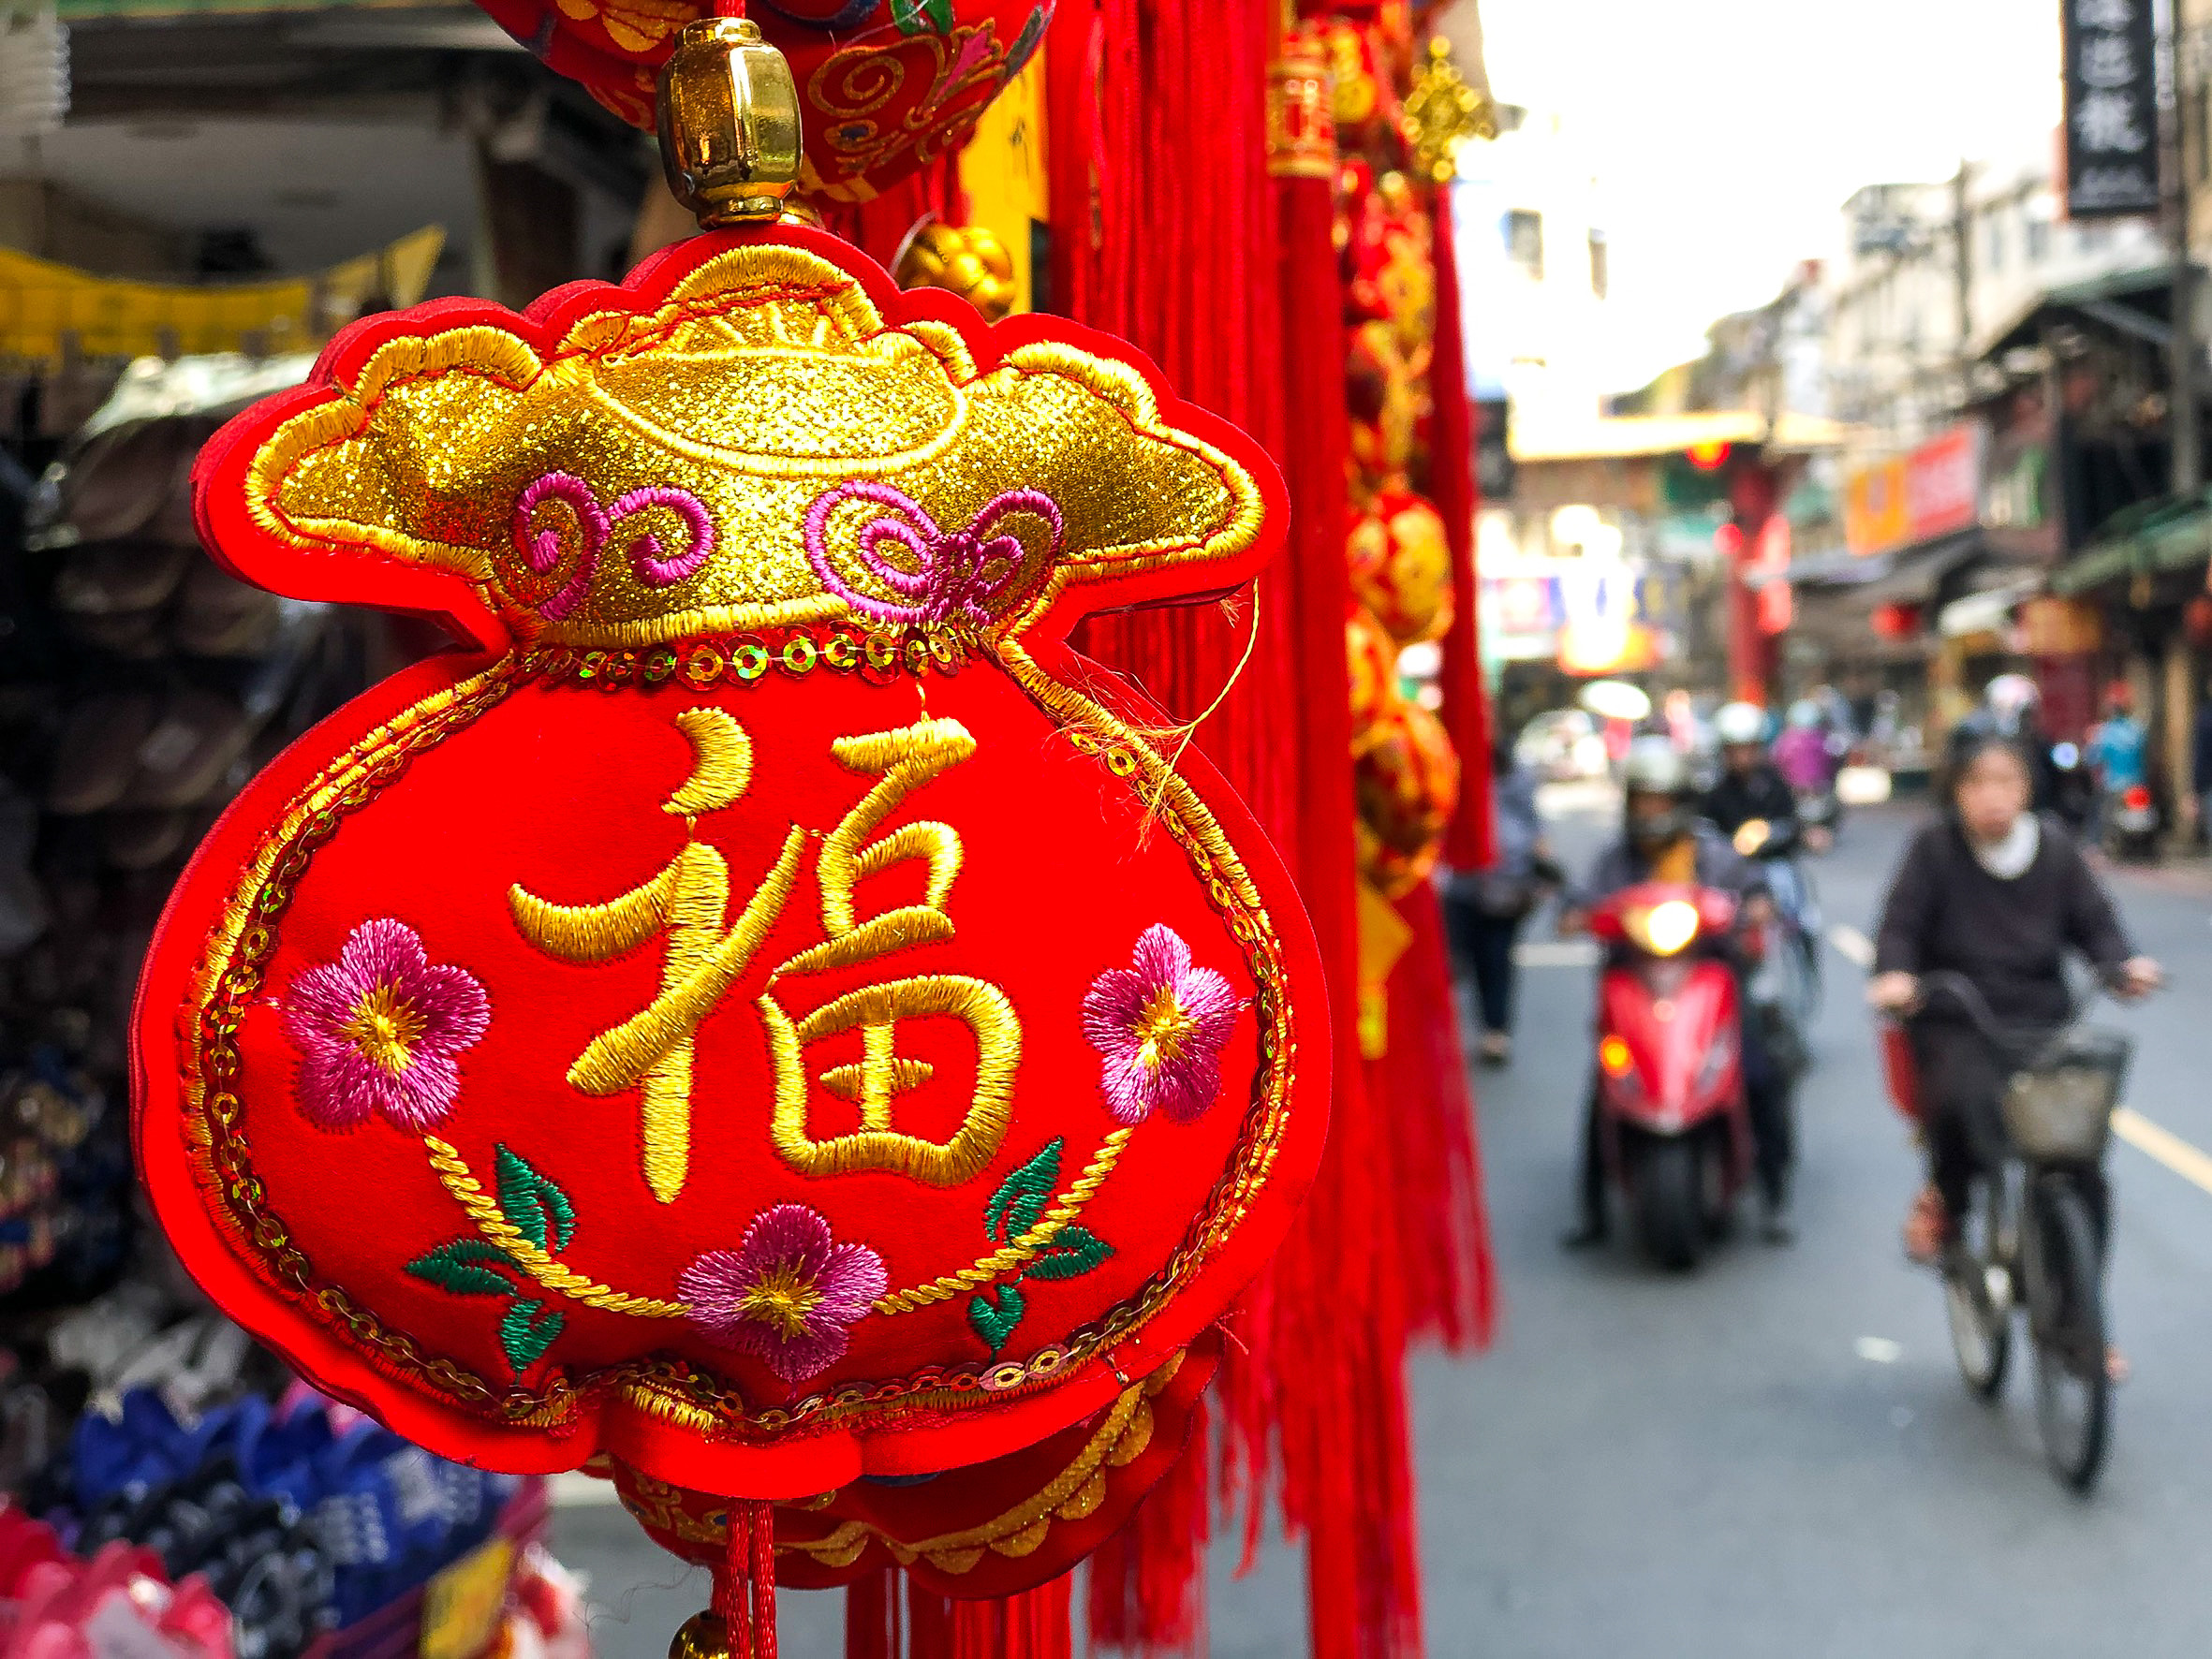 Tết Nguyên đán là một trong những ngày lễ này đặc biệt quan trọng ở nhiều quốc gia châu Á. (Nguồn ảnh: Pixabay)